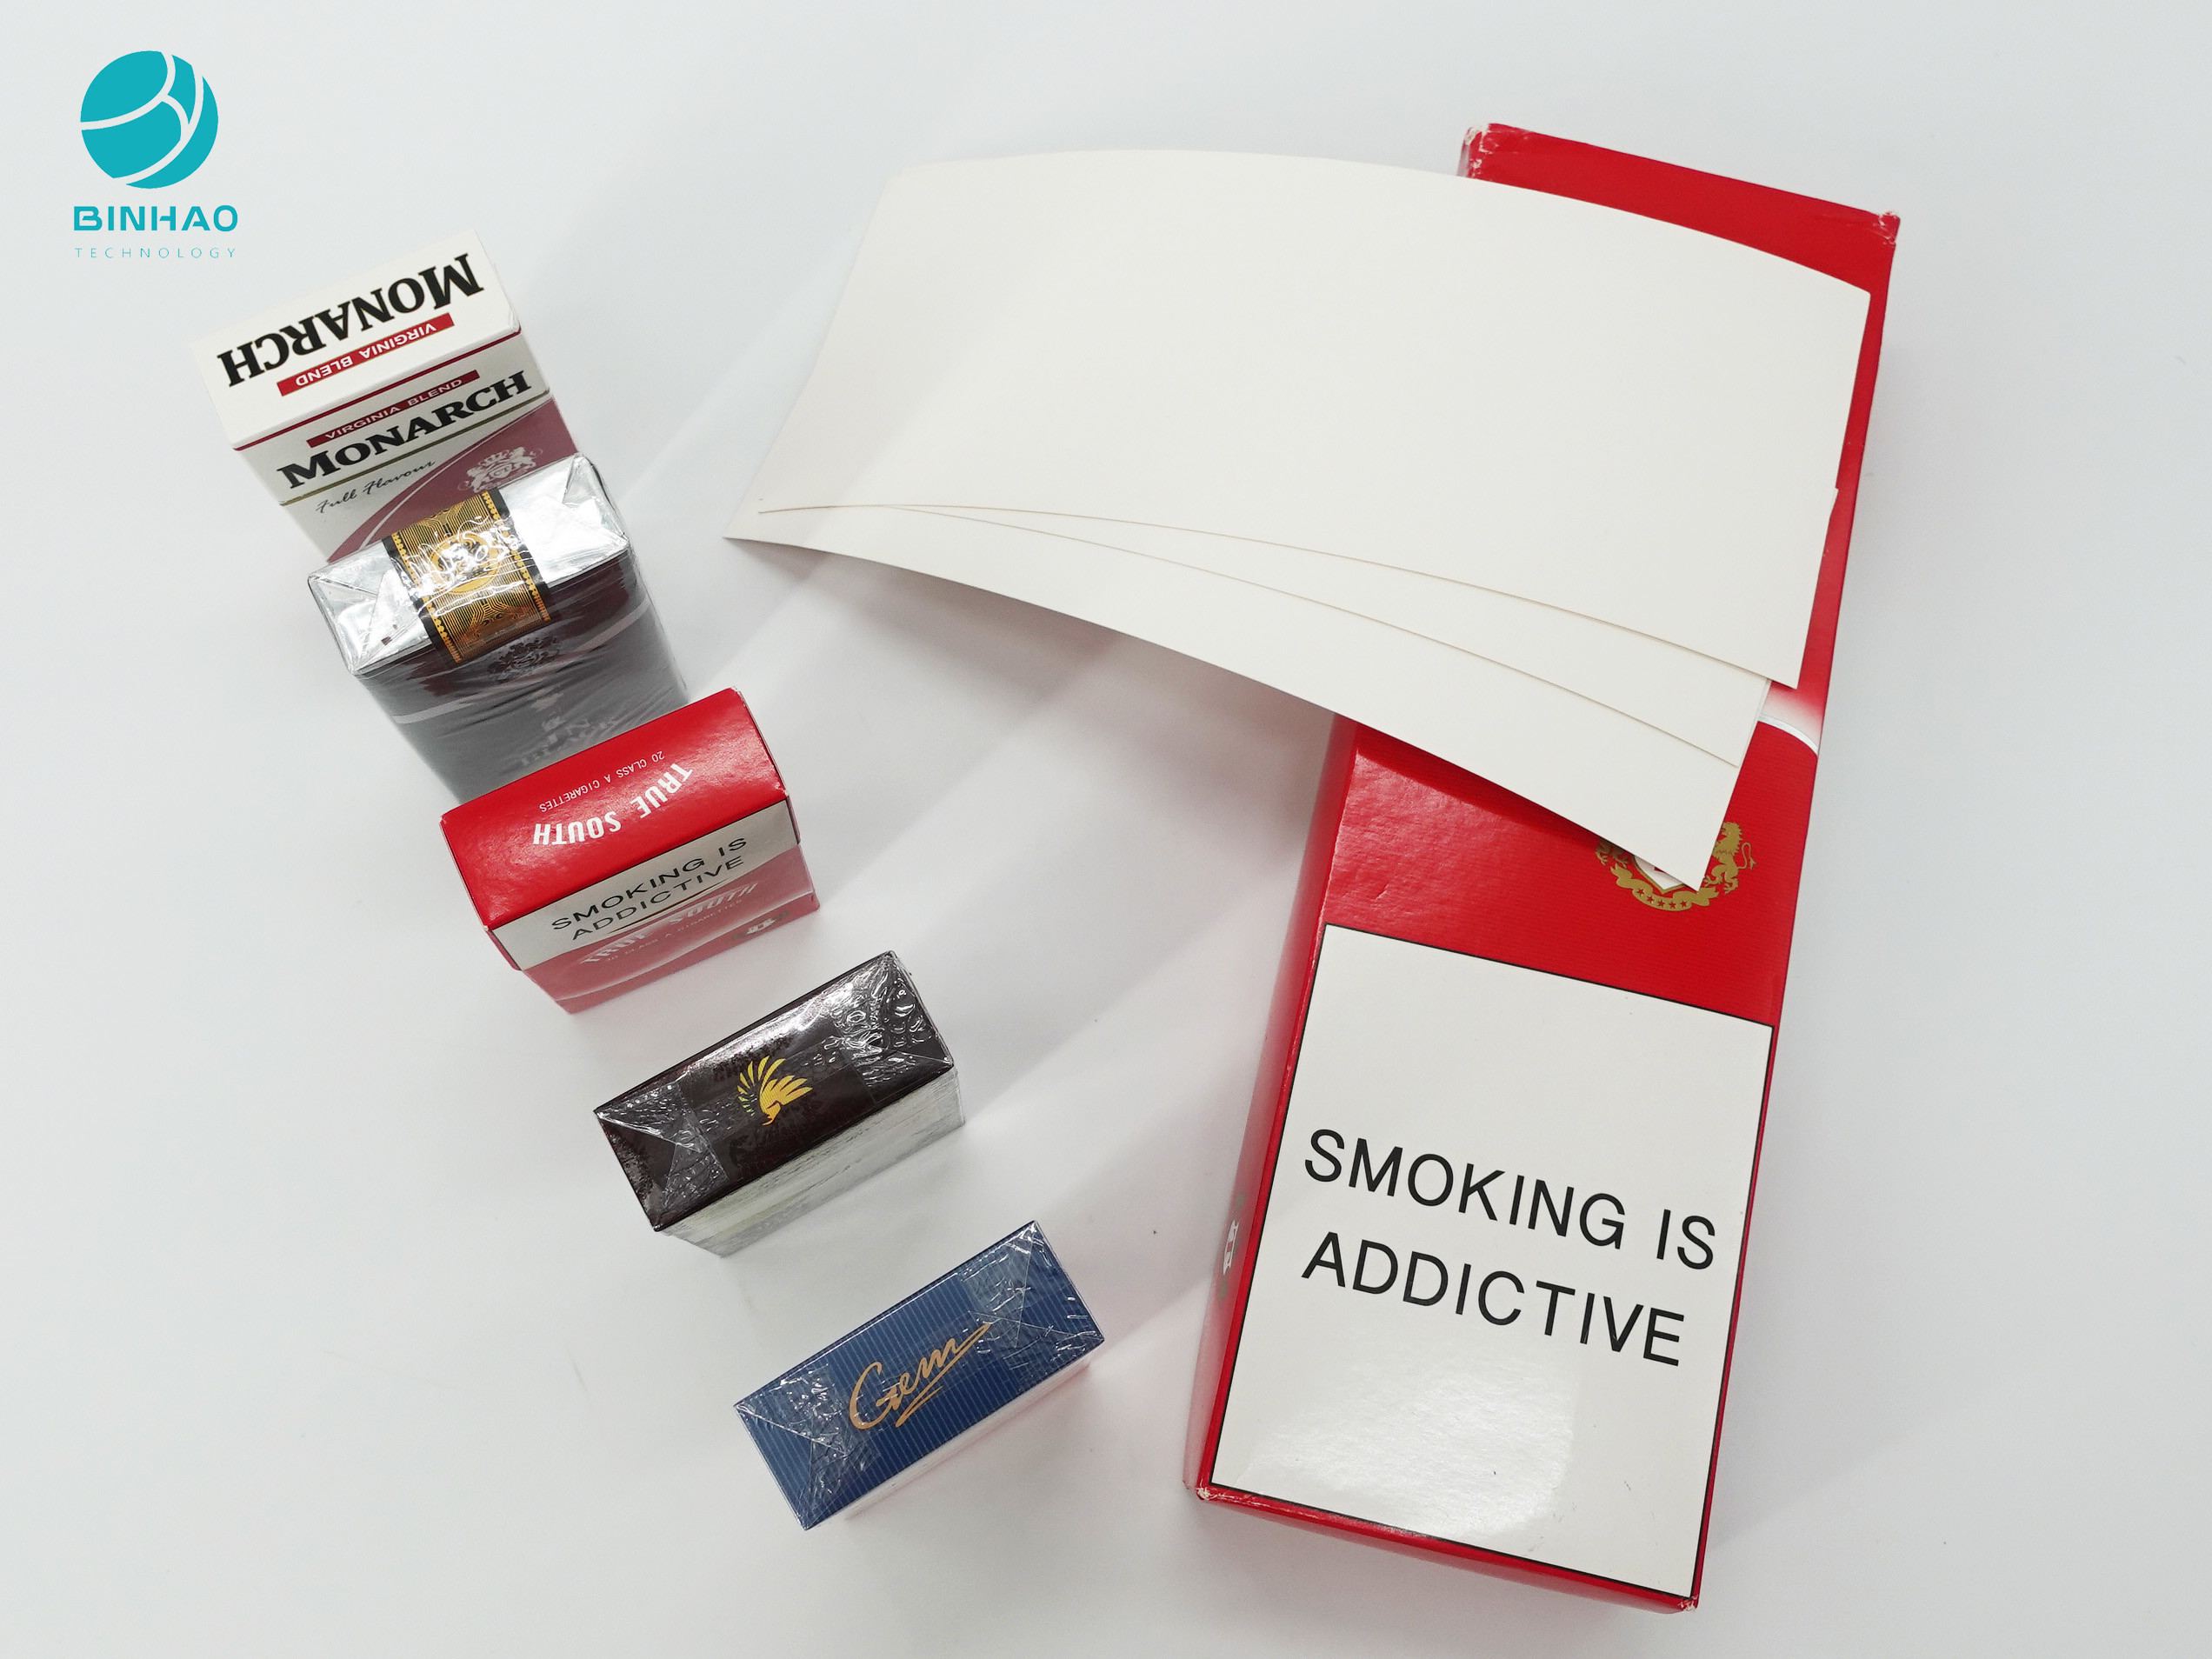 กล่องบรรจุภัณฑ์ยาสูบที่ทนทานกล่องบรรจุบุหรี่กระดาษแข็งพร้อมโลโก้ที่กำหนดเอง